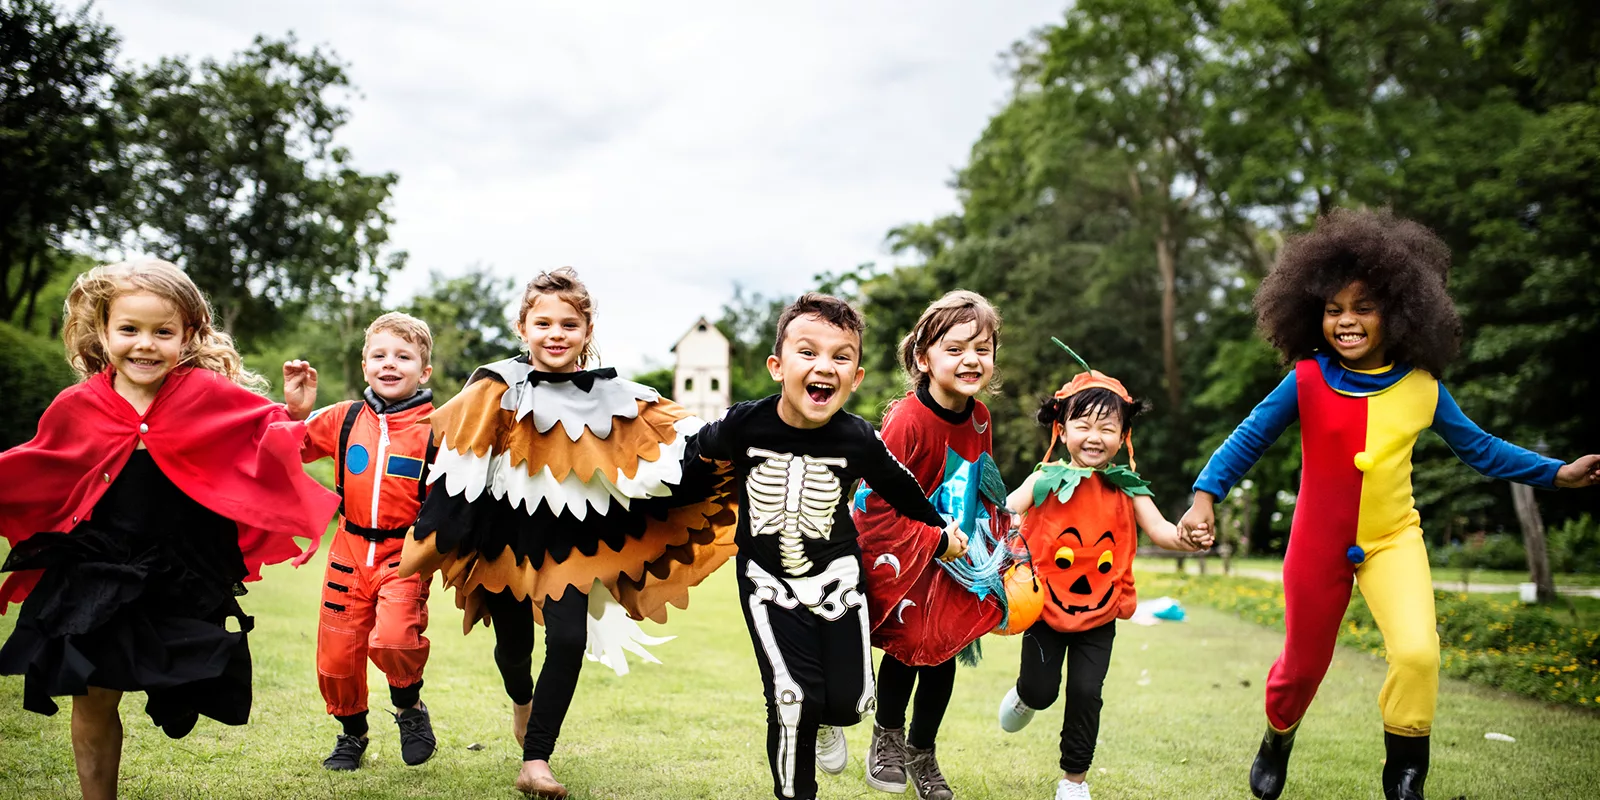 kids in halloween costumes running